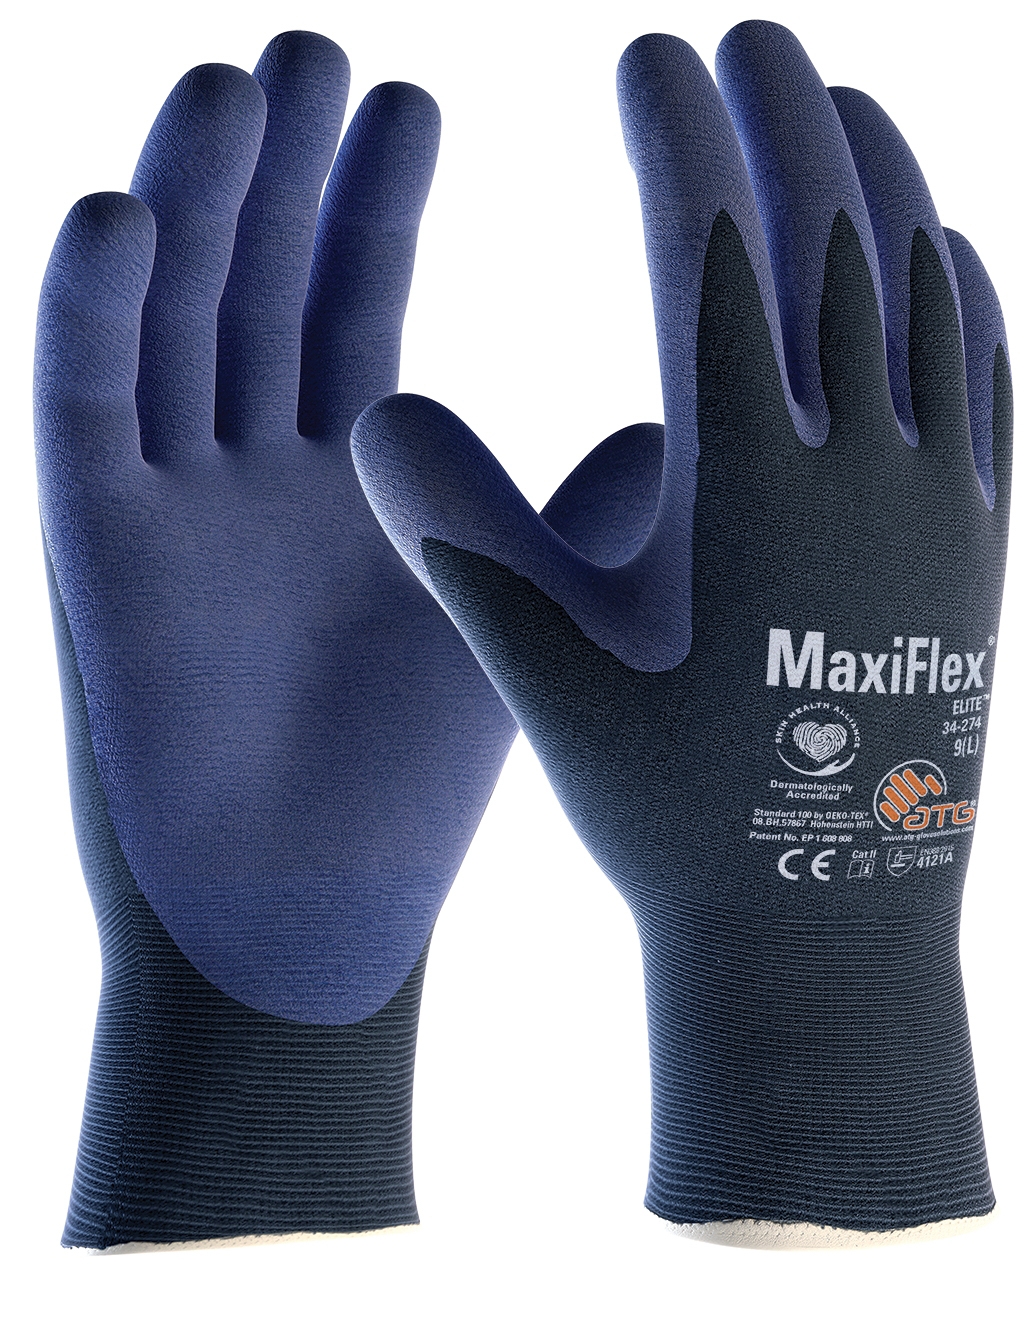 MaxiFlex® Elite™ Nylon-Strickhandschuhe (34-274) in Blau, Größe 6